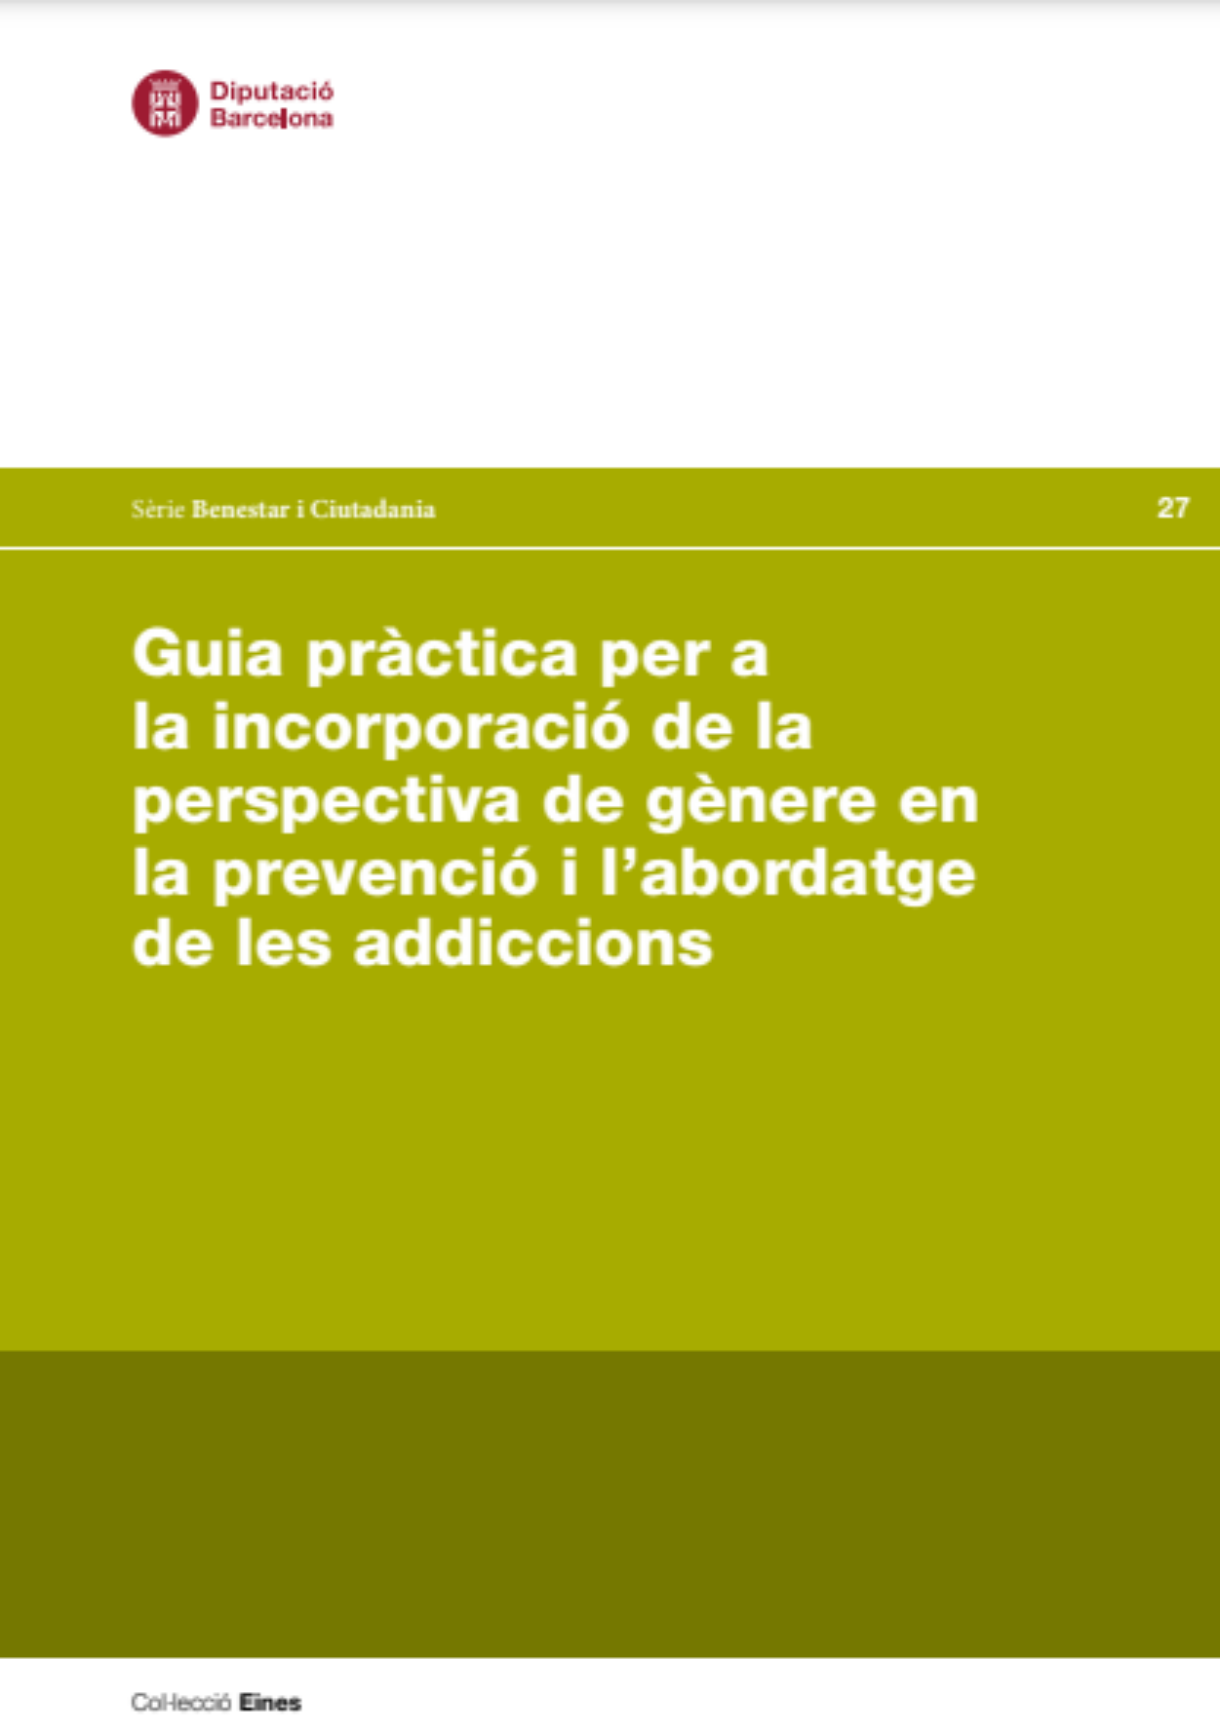 Guia pràctica per a la incorporació de la perspectiva de gènere en la prevenció i l’abordatge de les addiccions